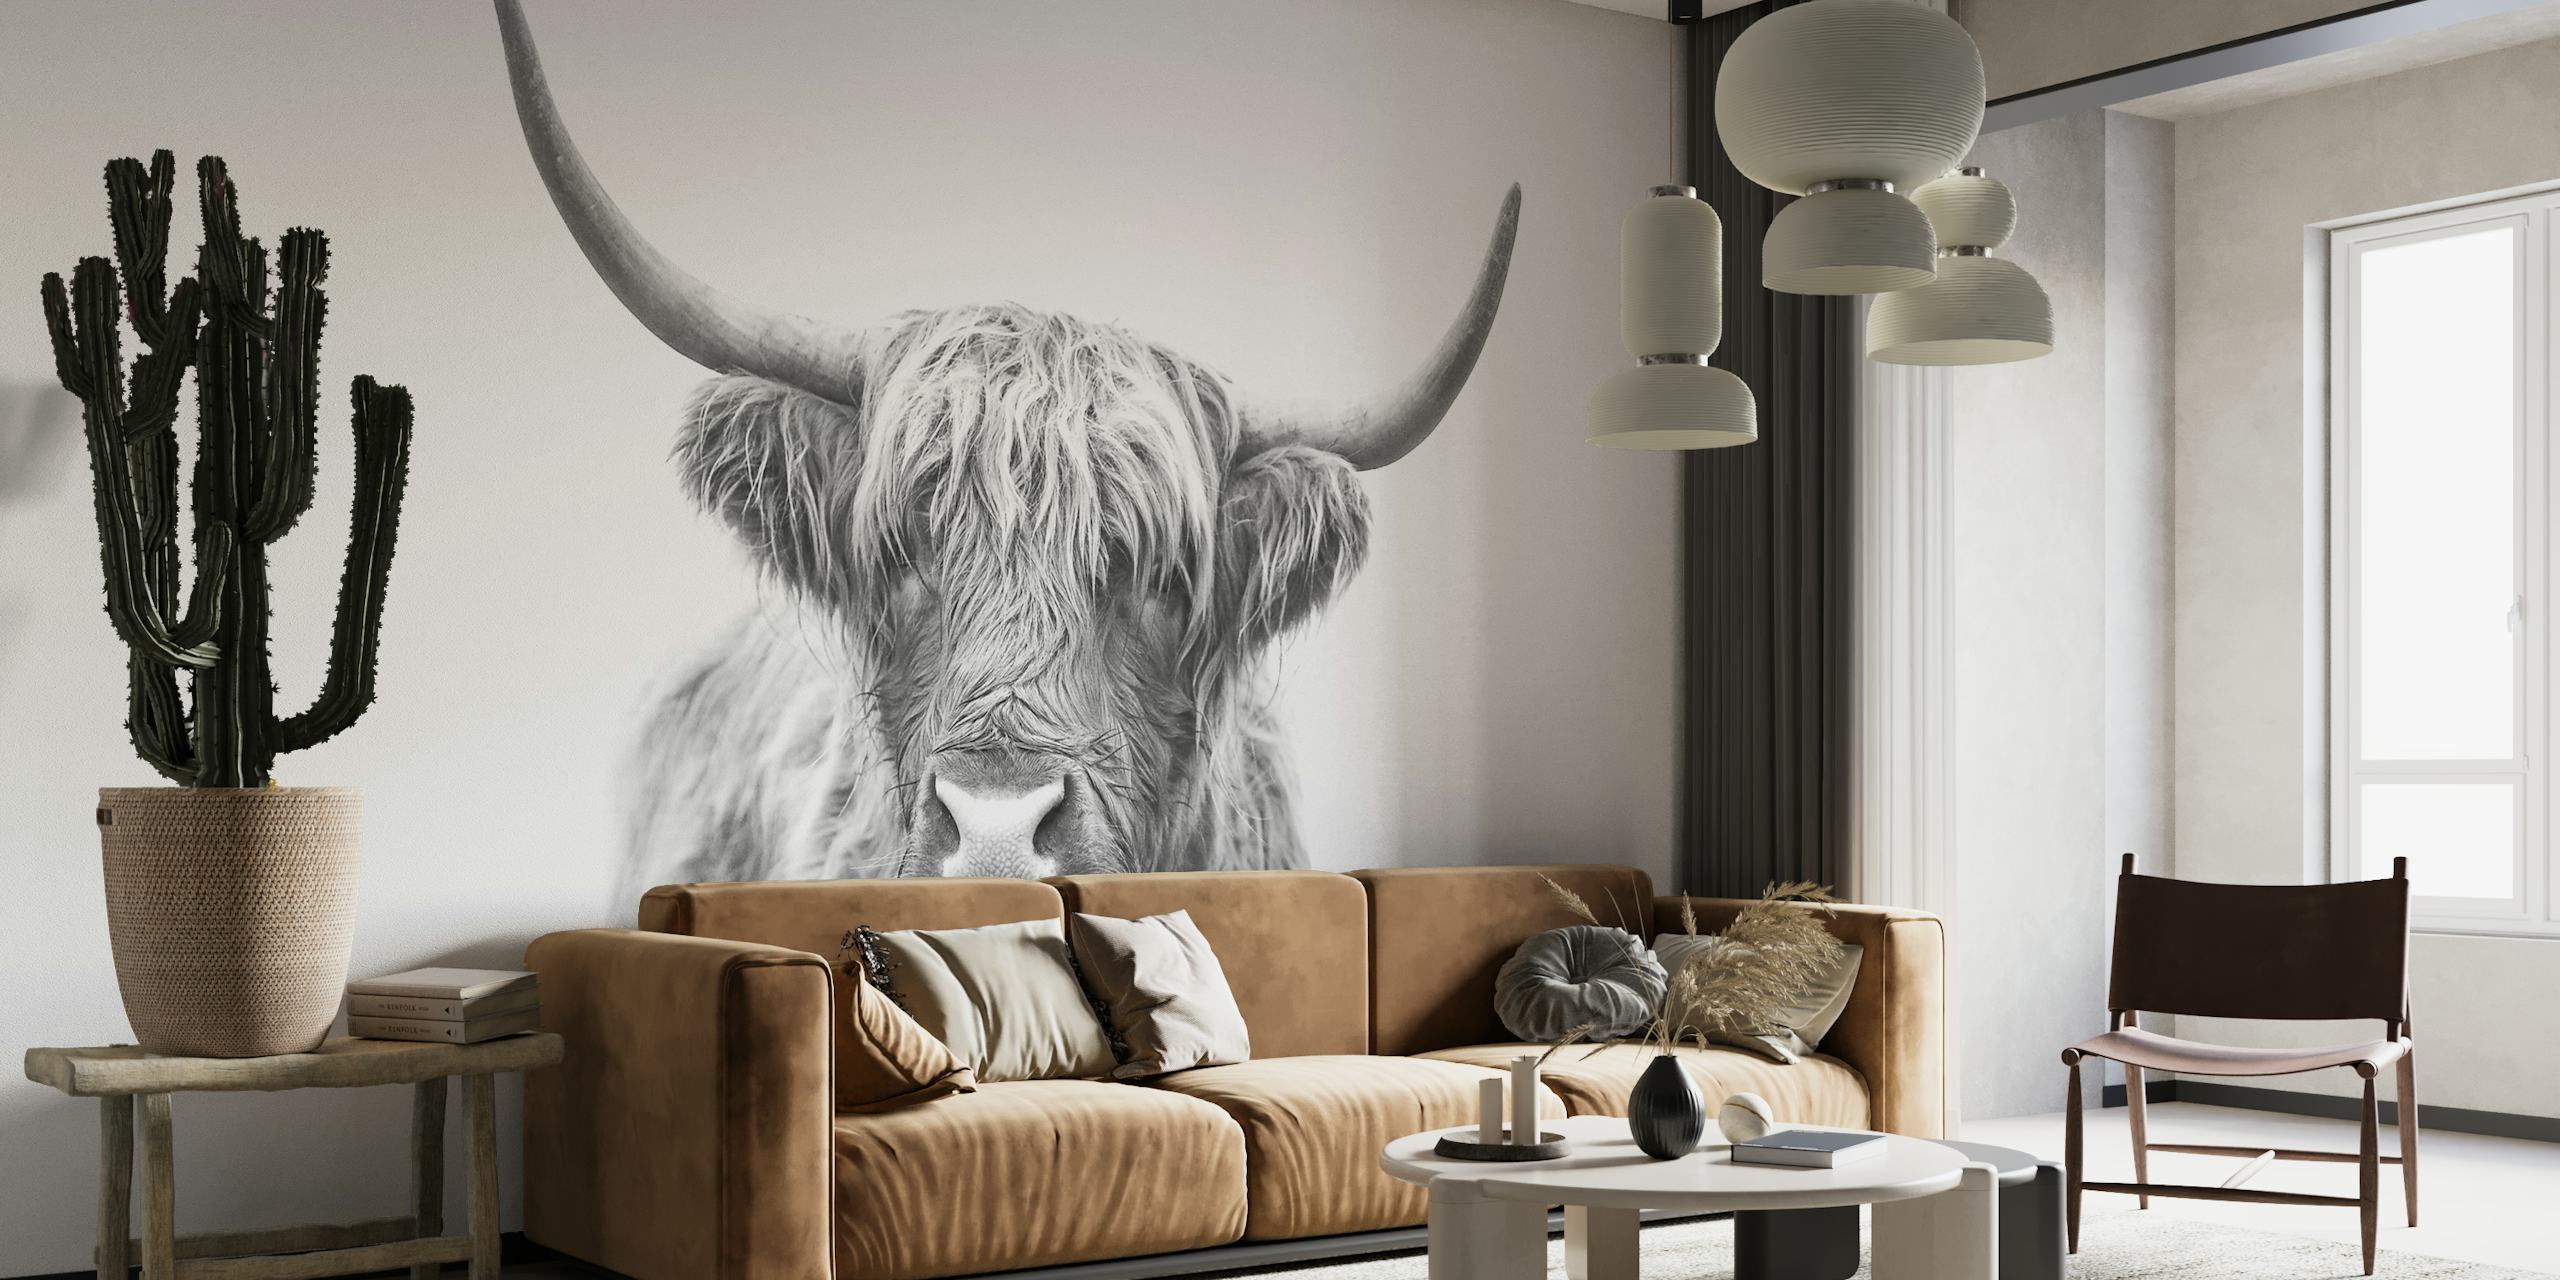 Arte mural monocromática de Highland Bull